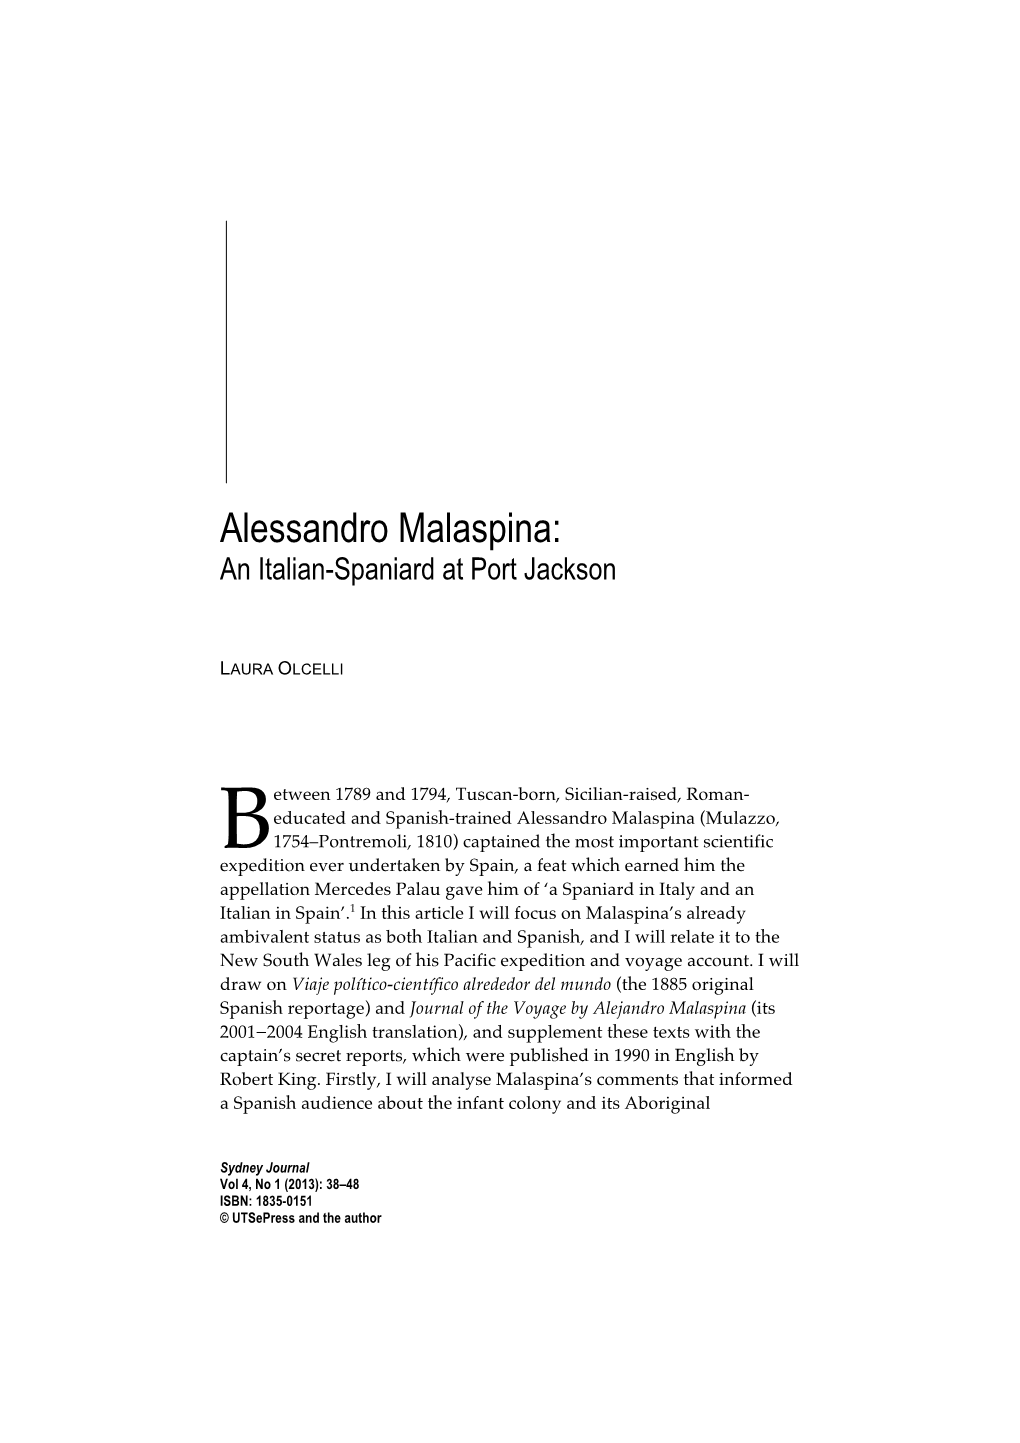 Alessandro Malaspina: an Italian-Spaniard at Port Jackson